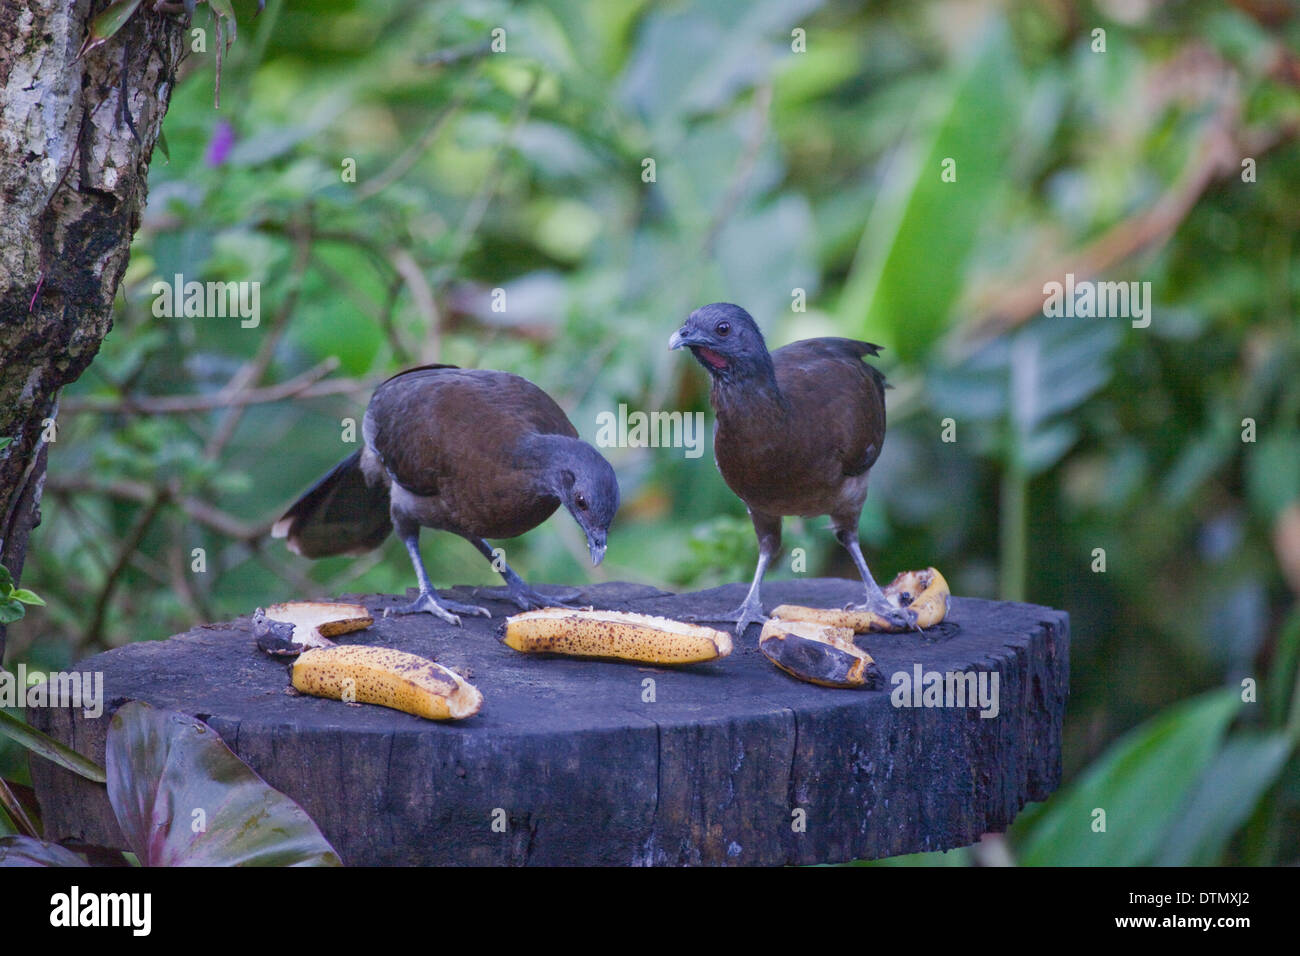 A testa grigia (Chachalaca Ortalis cinereiceps). Coppia alimentazione sulle banane mature messo su un giardino degli uccelli la stazione di alimentazione. Costa Rica. Foto Stock